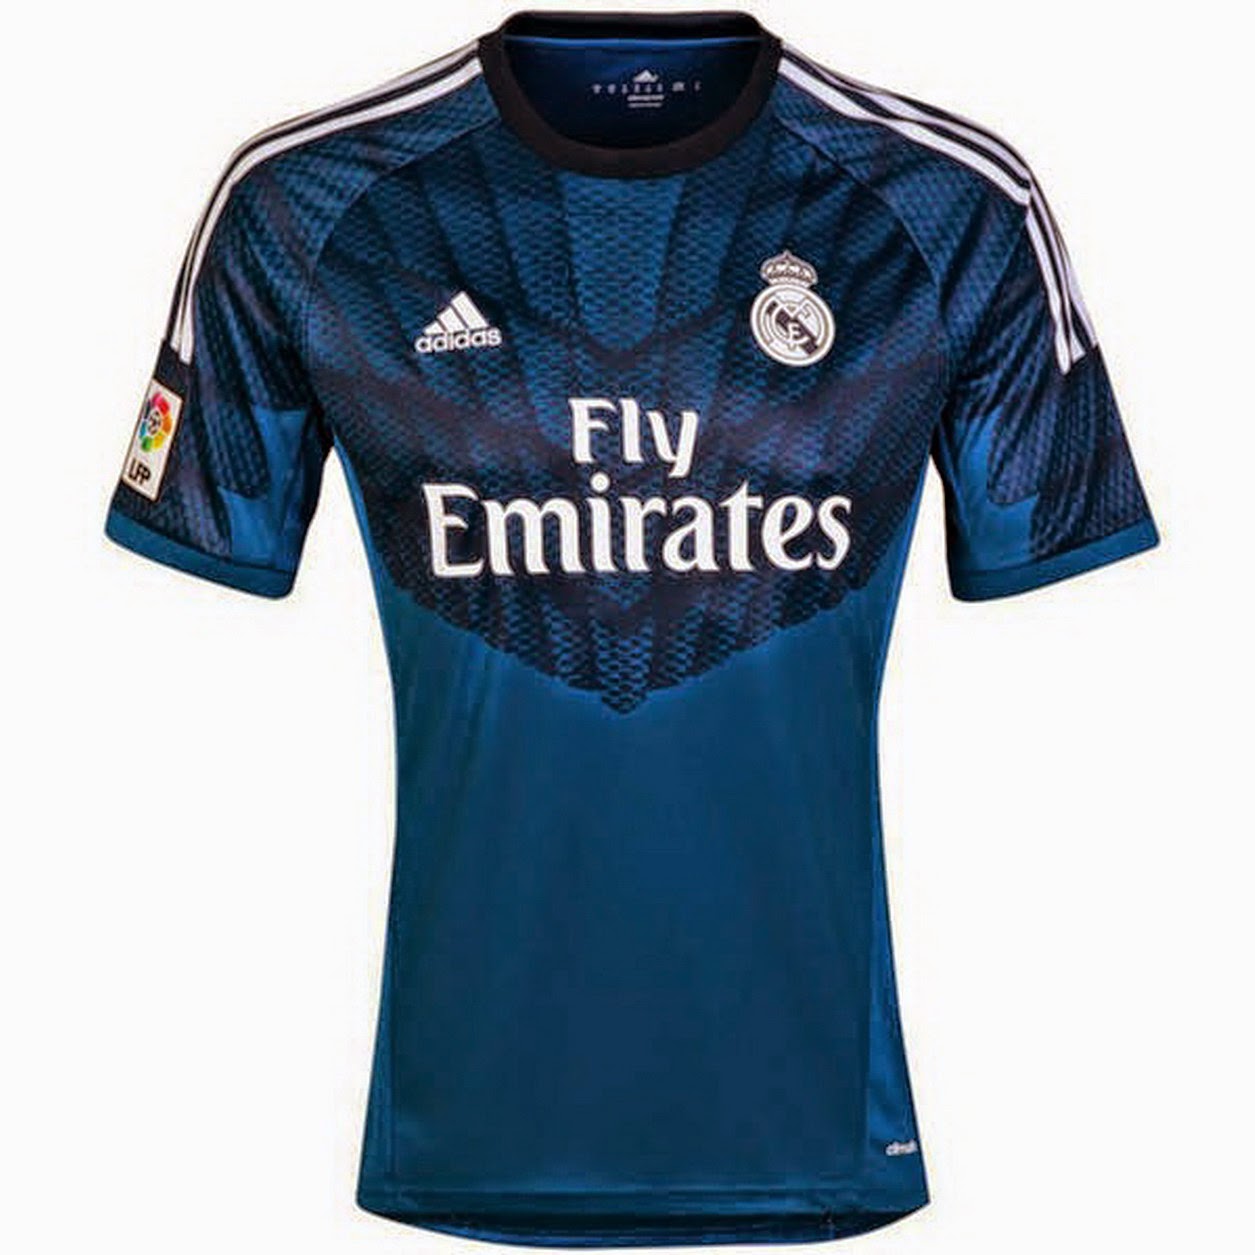 los fans de fútbol: Nueva camiseta de Iker Casillas del Real Madrid 2014 2015 [FOTO]